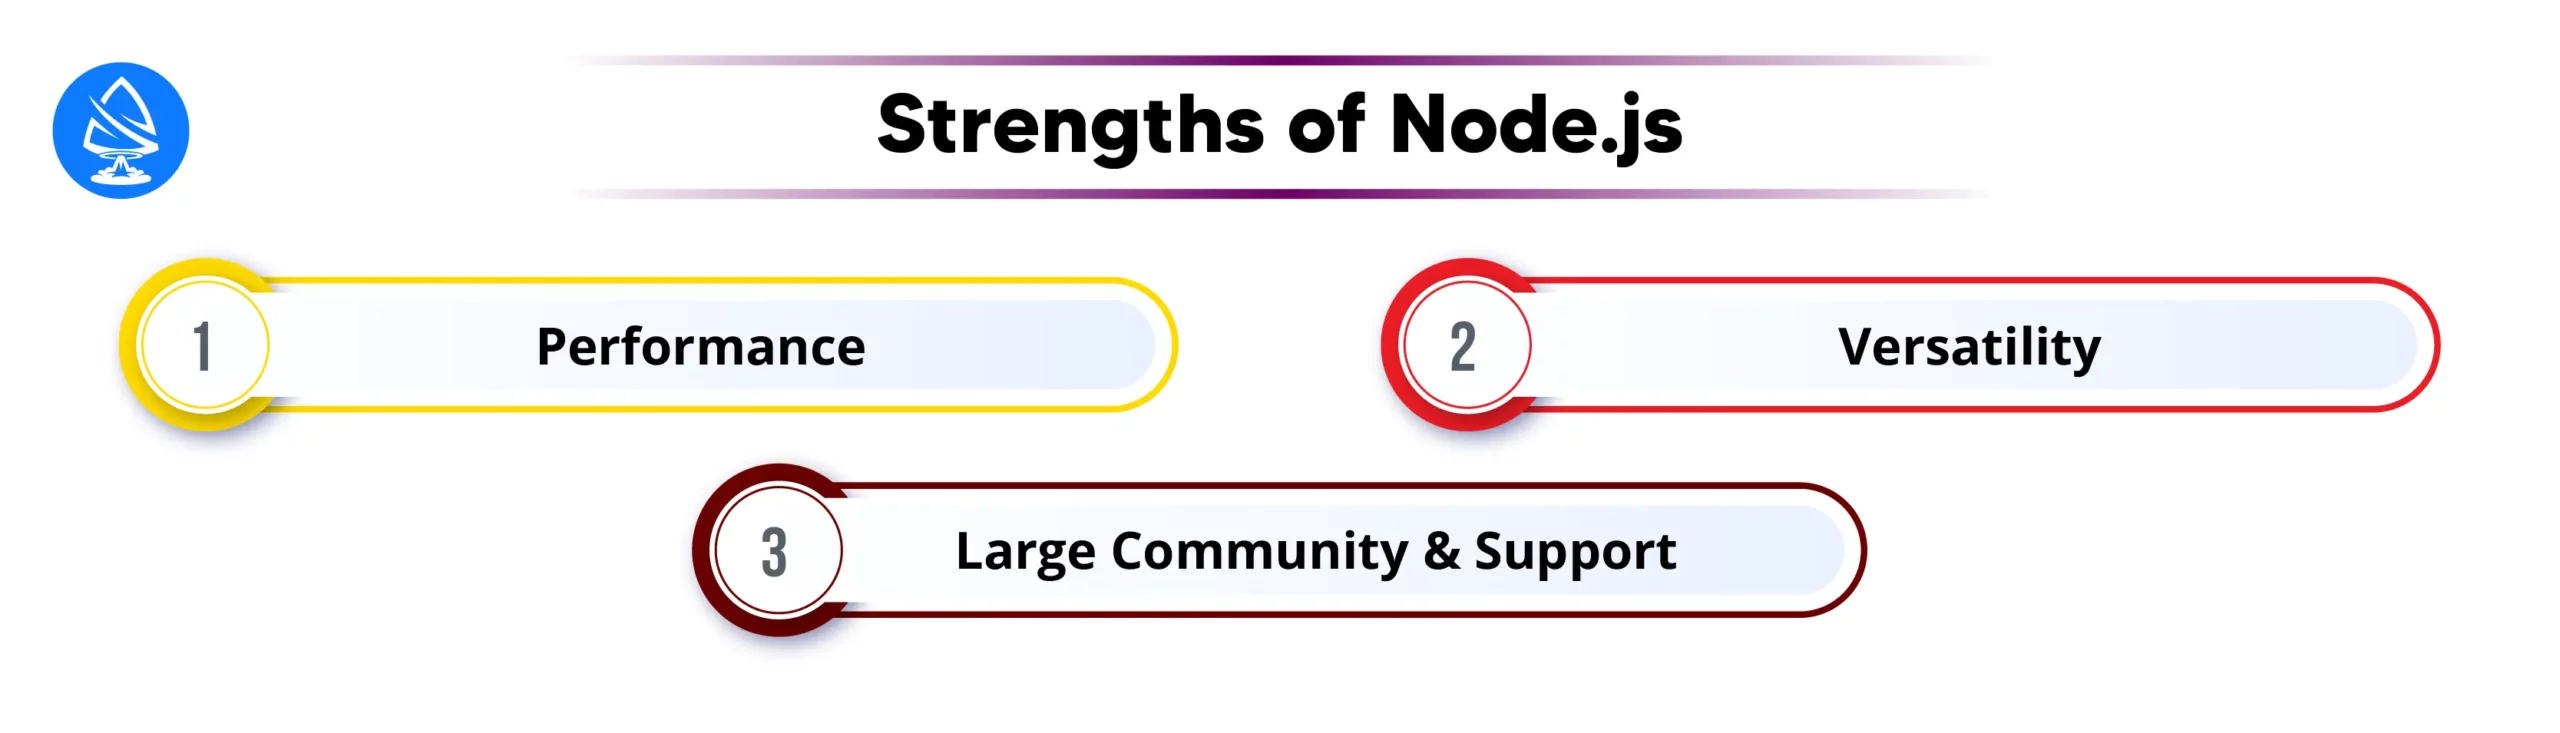 Strengths of Node.js 